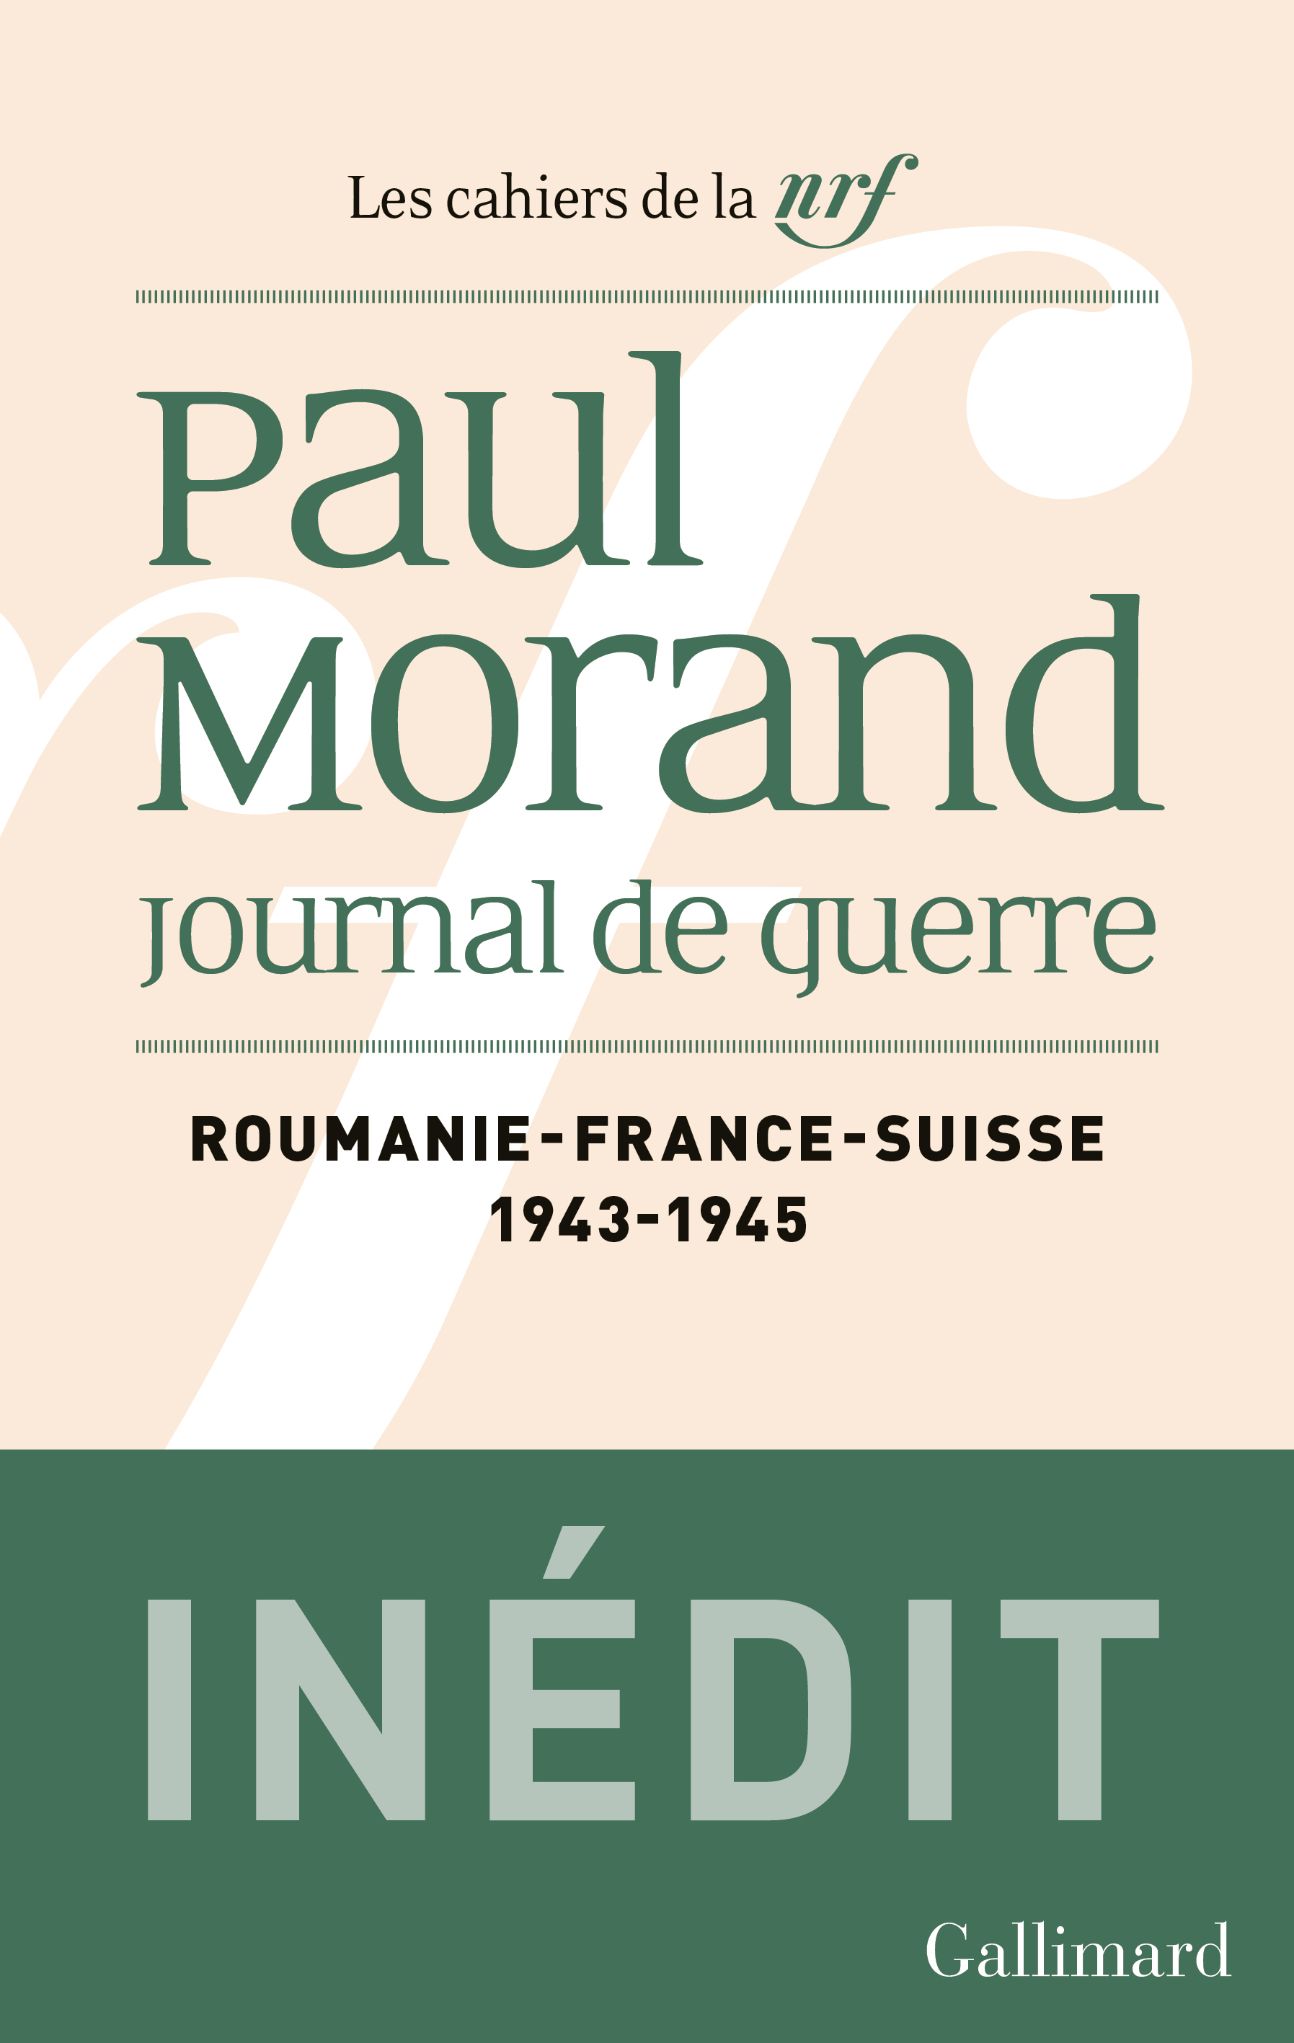 Paul Morand, Journal de guerre. Roumanie, France, Suisse. 1943-1945 (éd. Bénédicte Vergez-Chaignon)